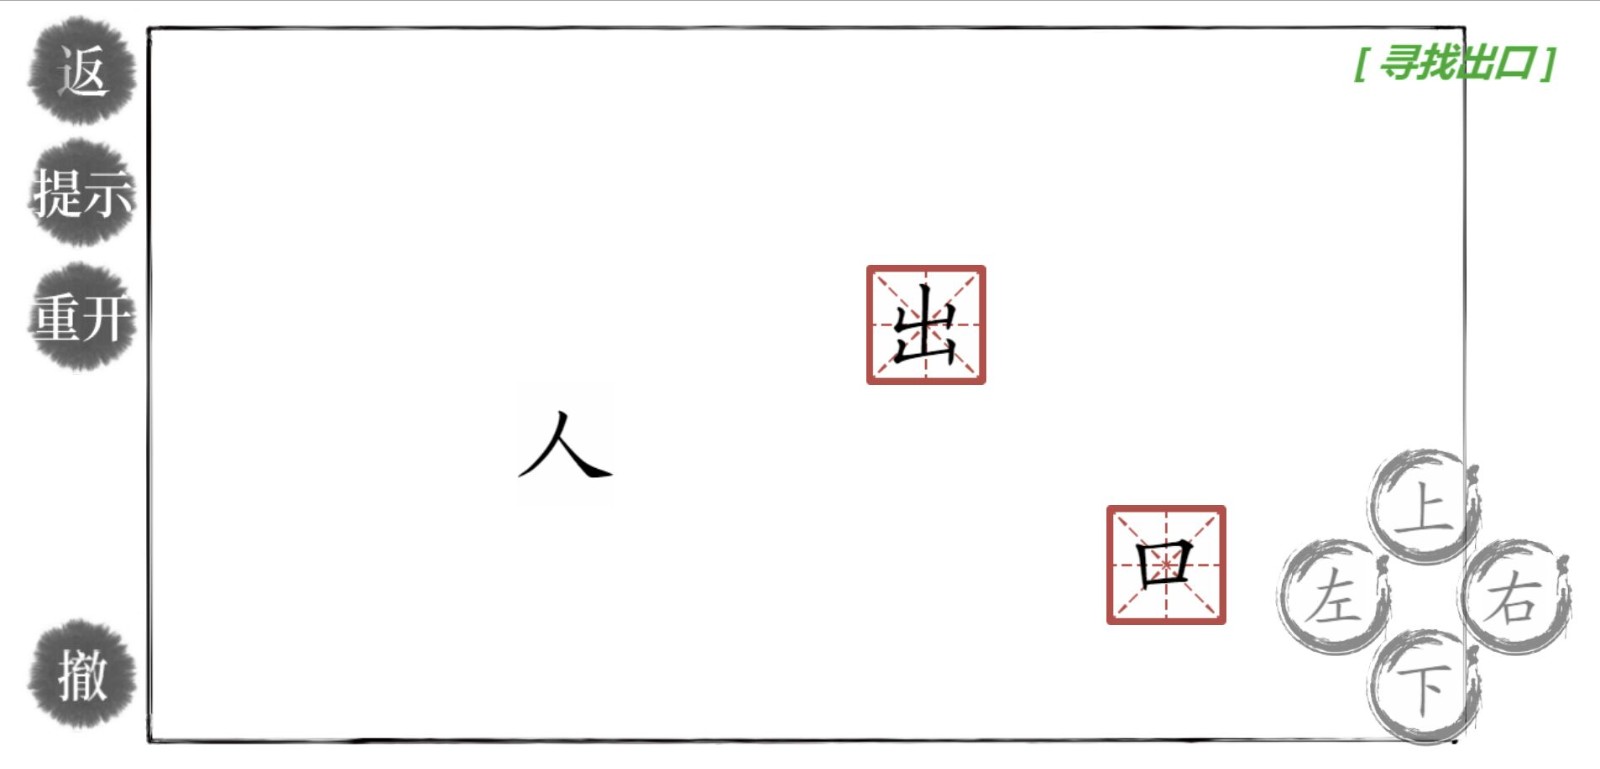 神奇汉字方块截图